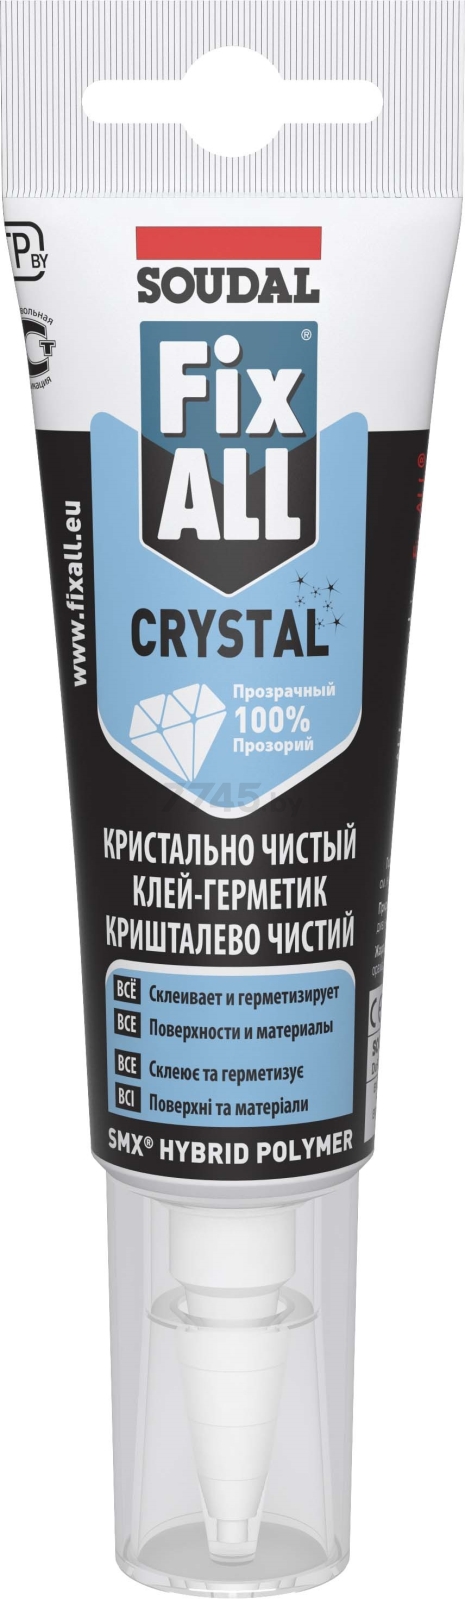 Клей-герметик SOUDAL Fix All Crystal бесцветный купить в Минске — цены в интернет-магазине 7745.by